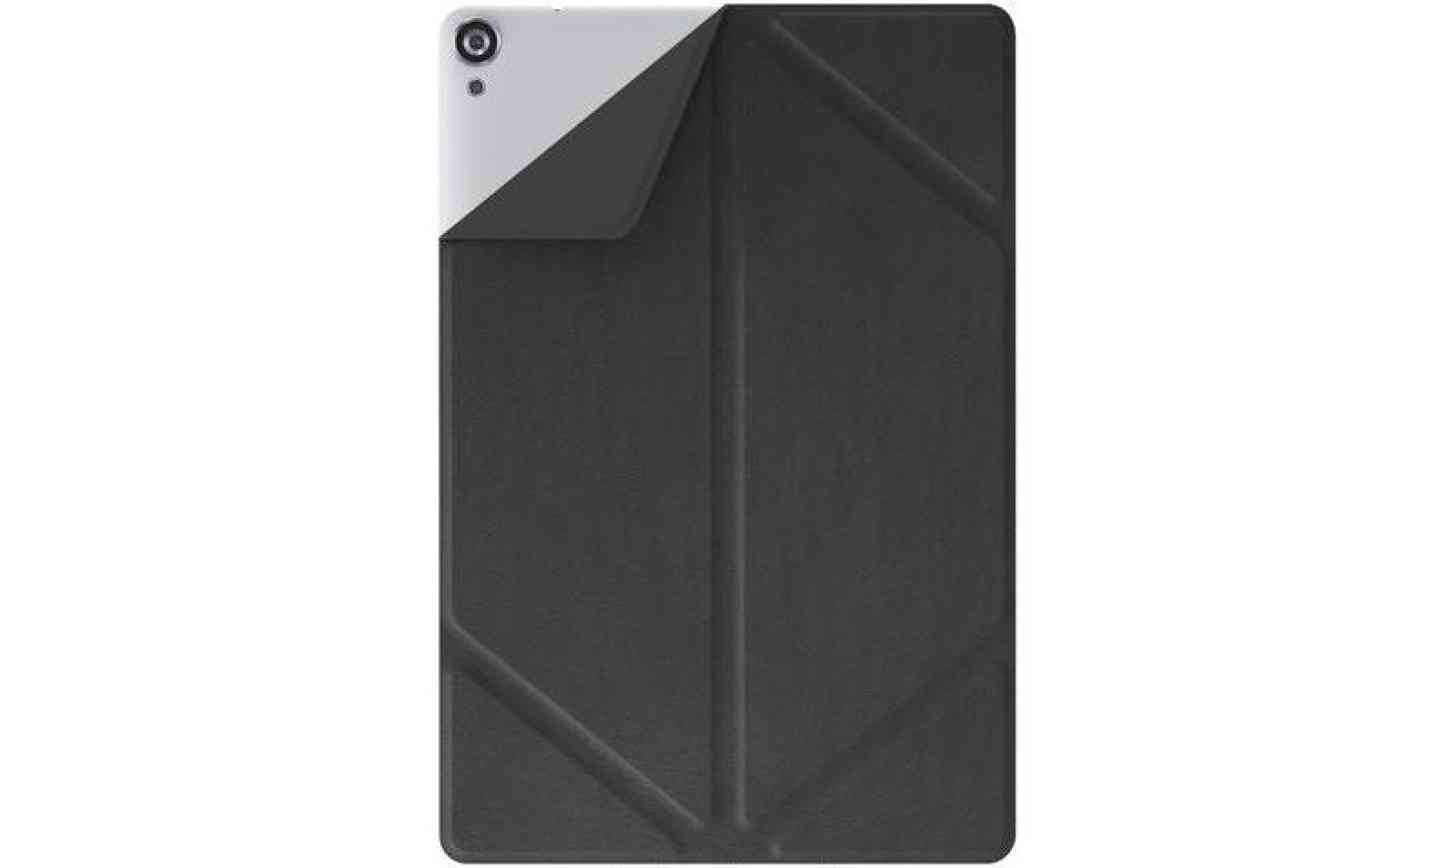 Nexus 9 Magic Cover black leather